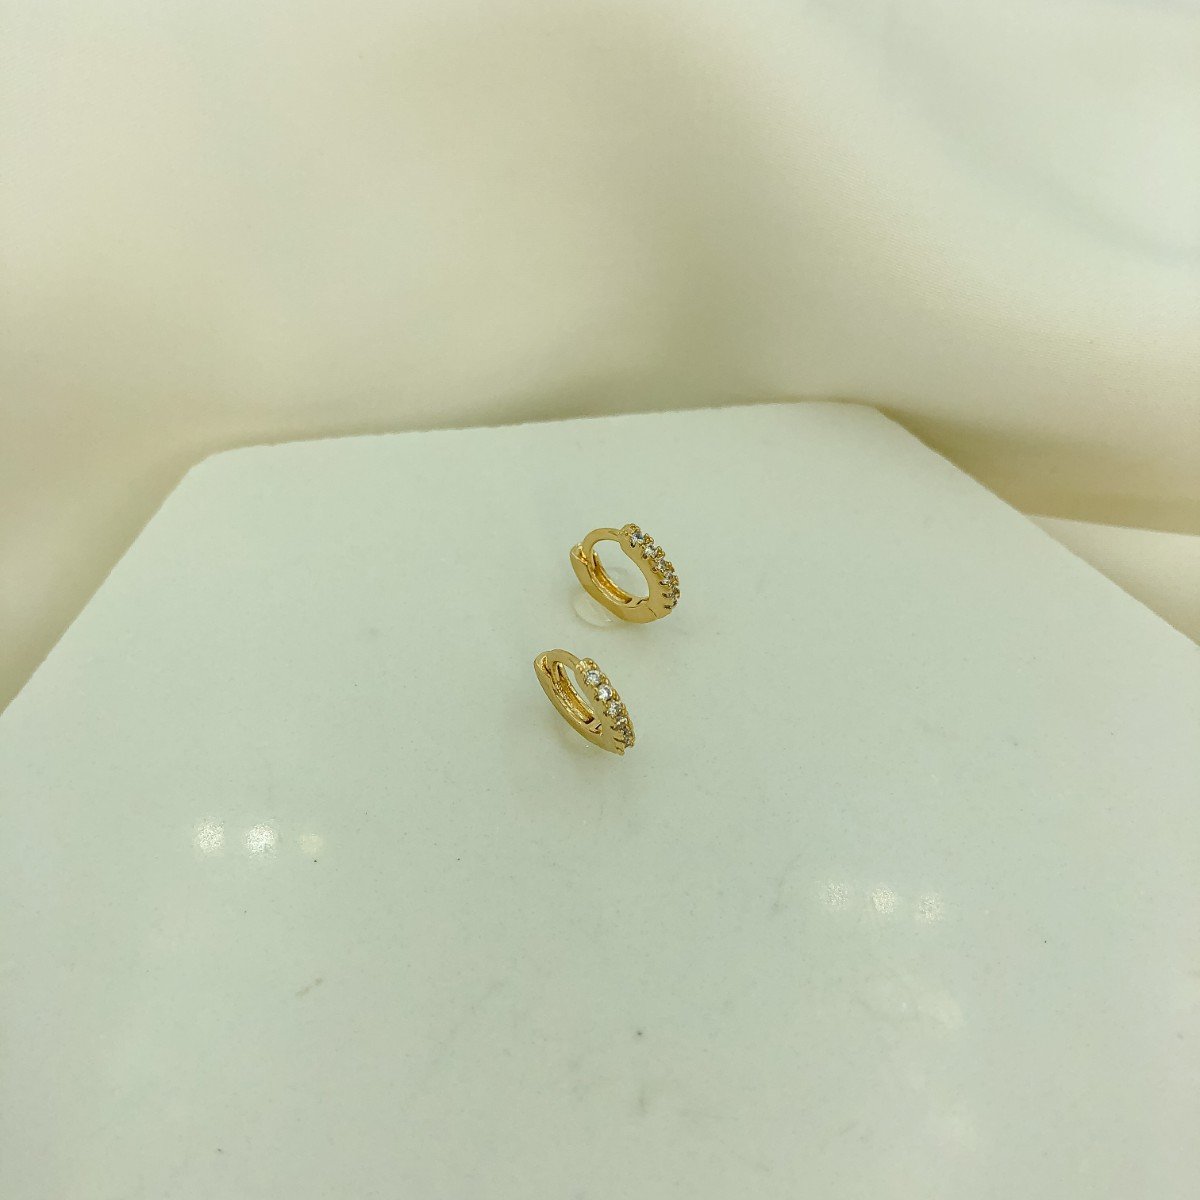 Brinco de Argola Pequena Cravejada de Zircônias Banhado em Ouro 18k